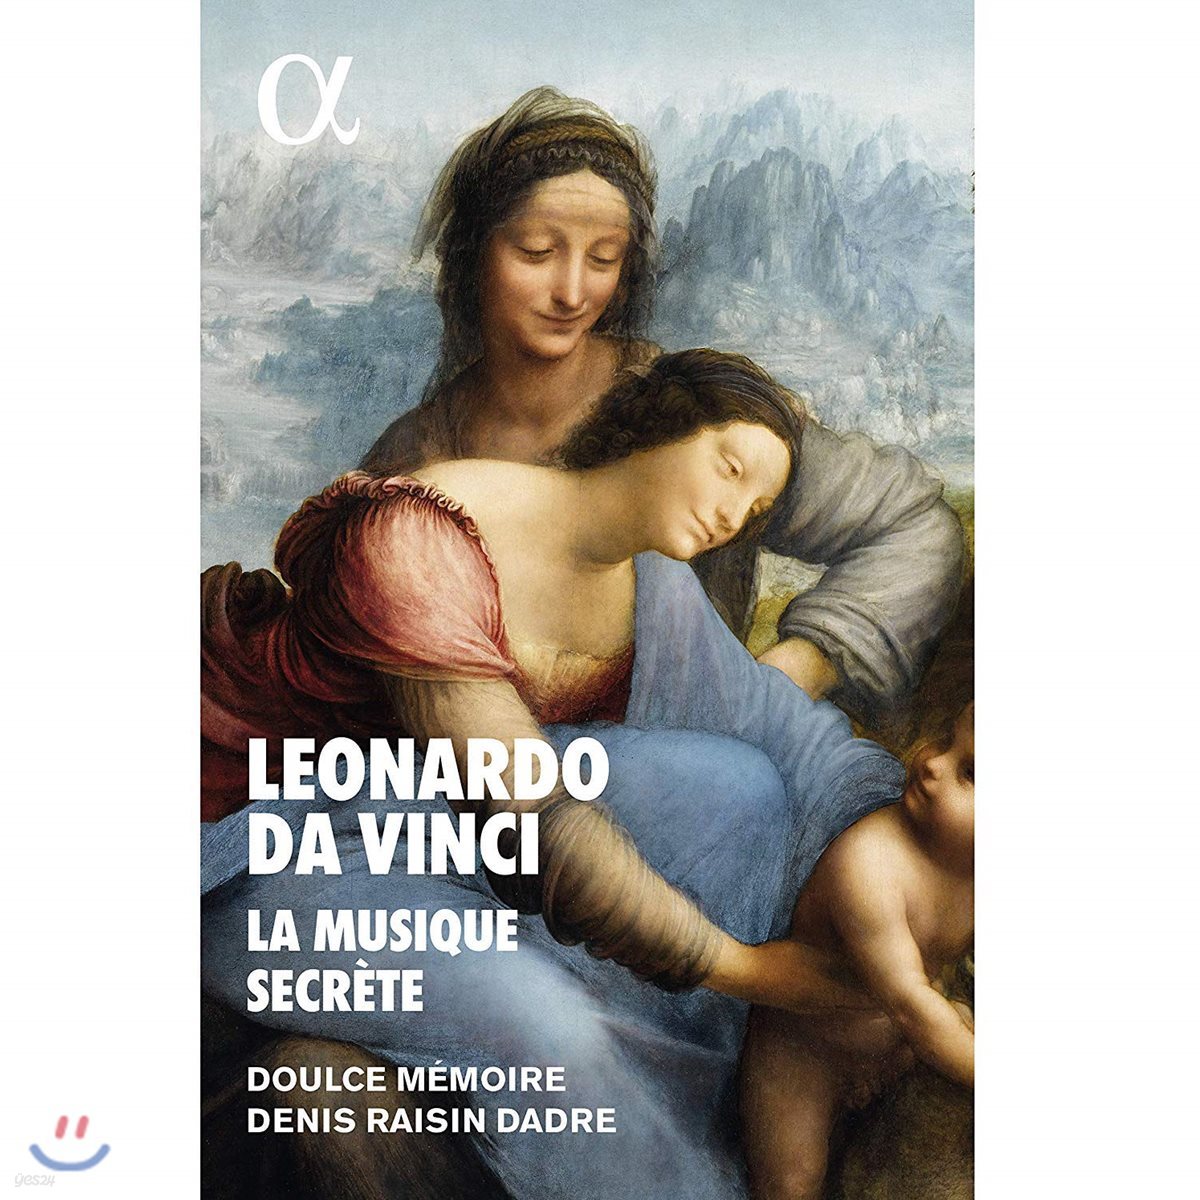 Denis Raisin Dadre / Doulce Memoire 레오나르도 다 빈치와 비밀의 음악 (Leonardo Da Vinci - La Musique Secrete)